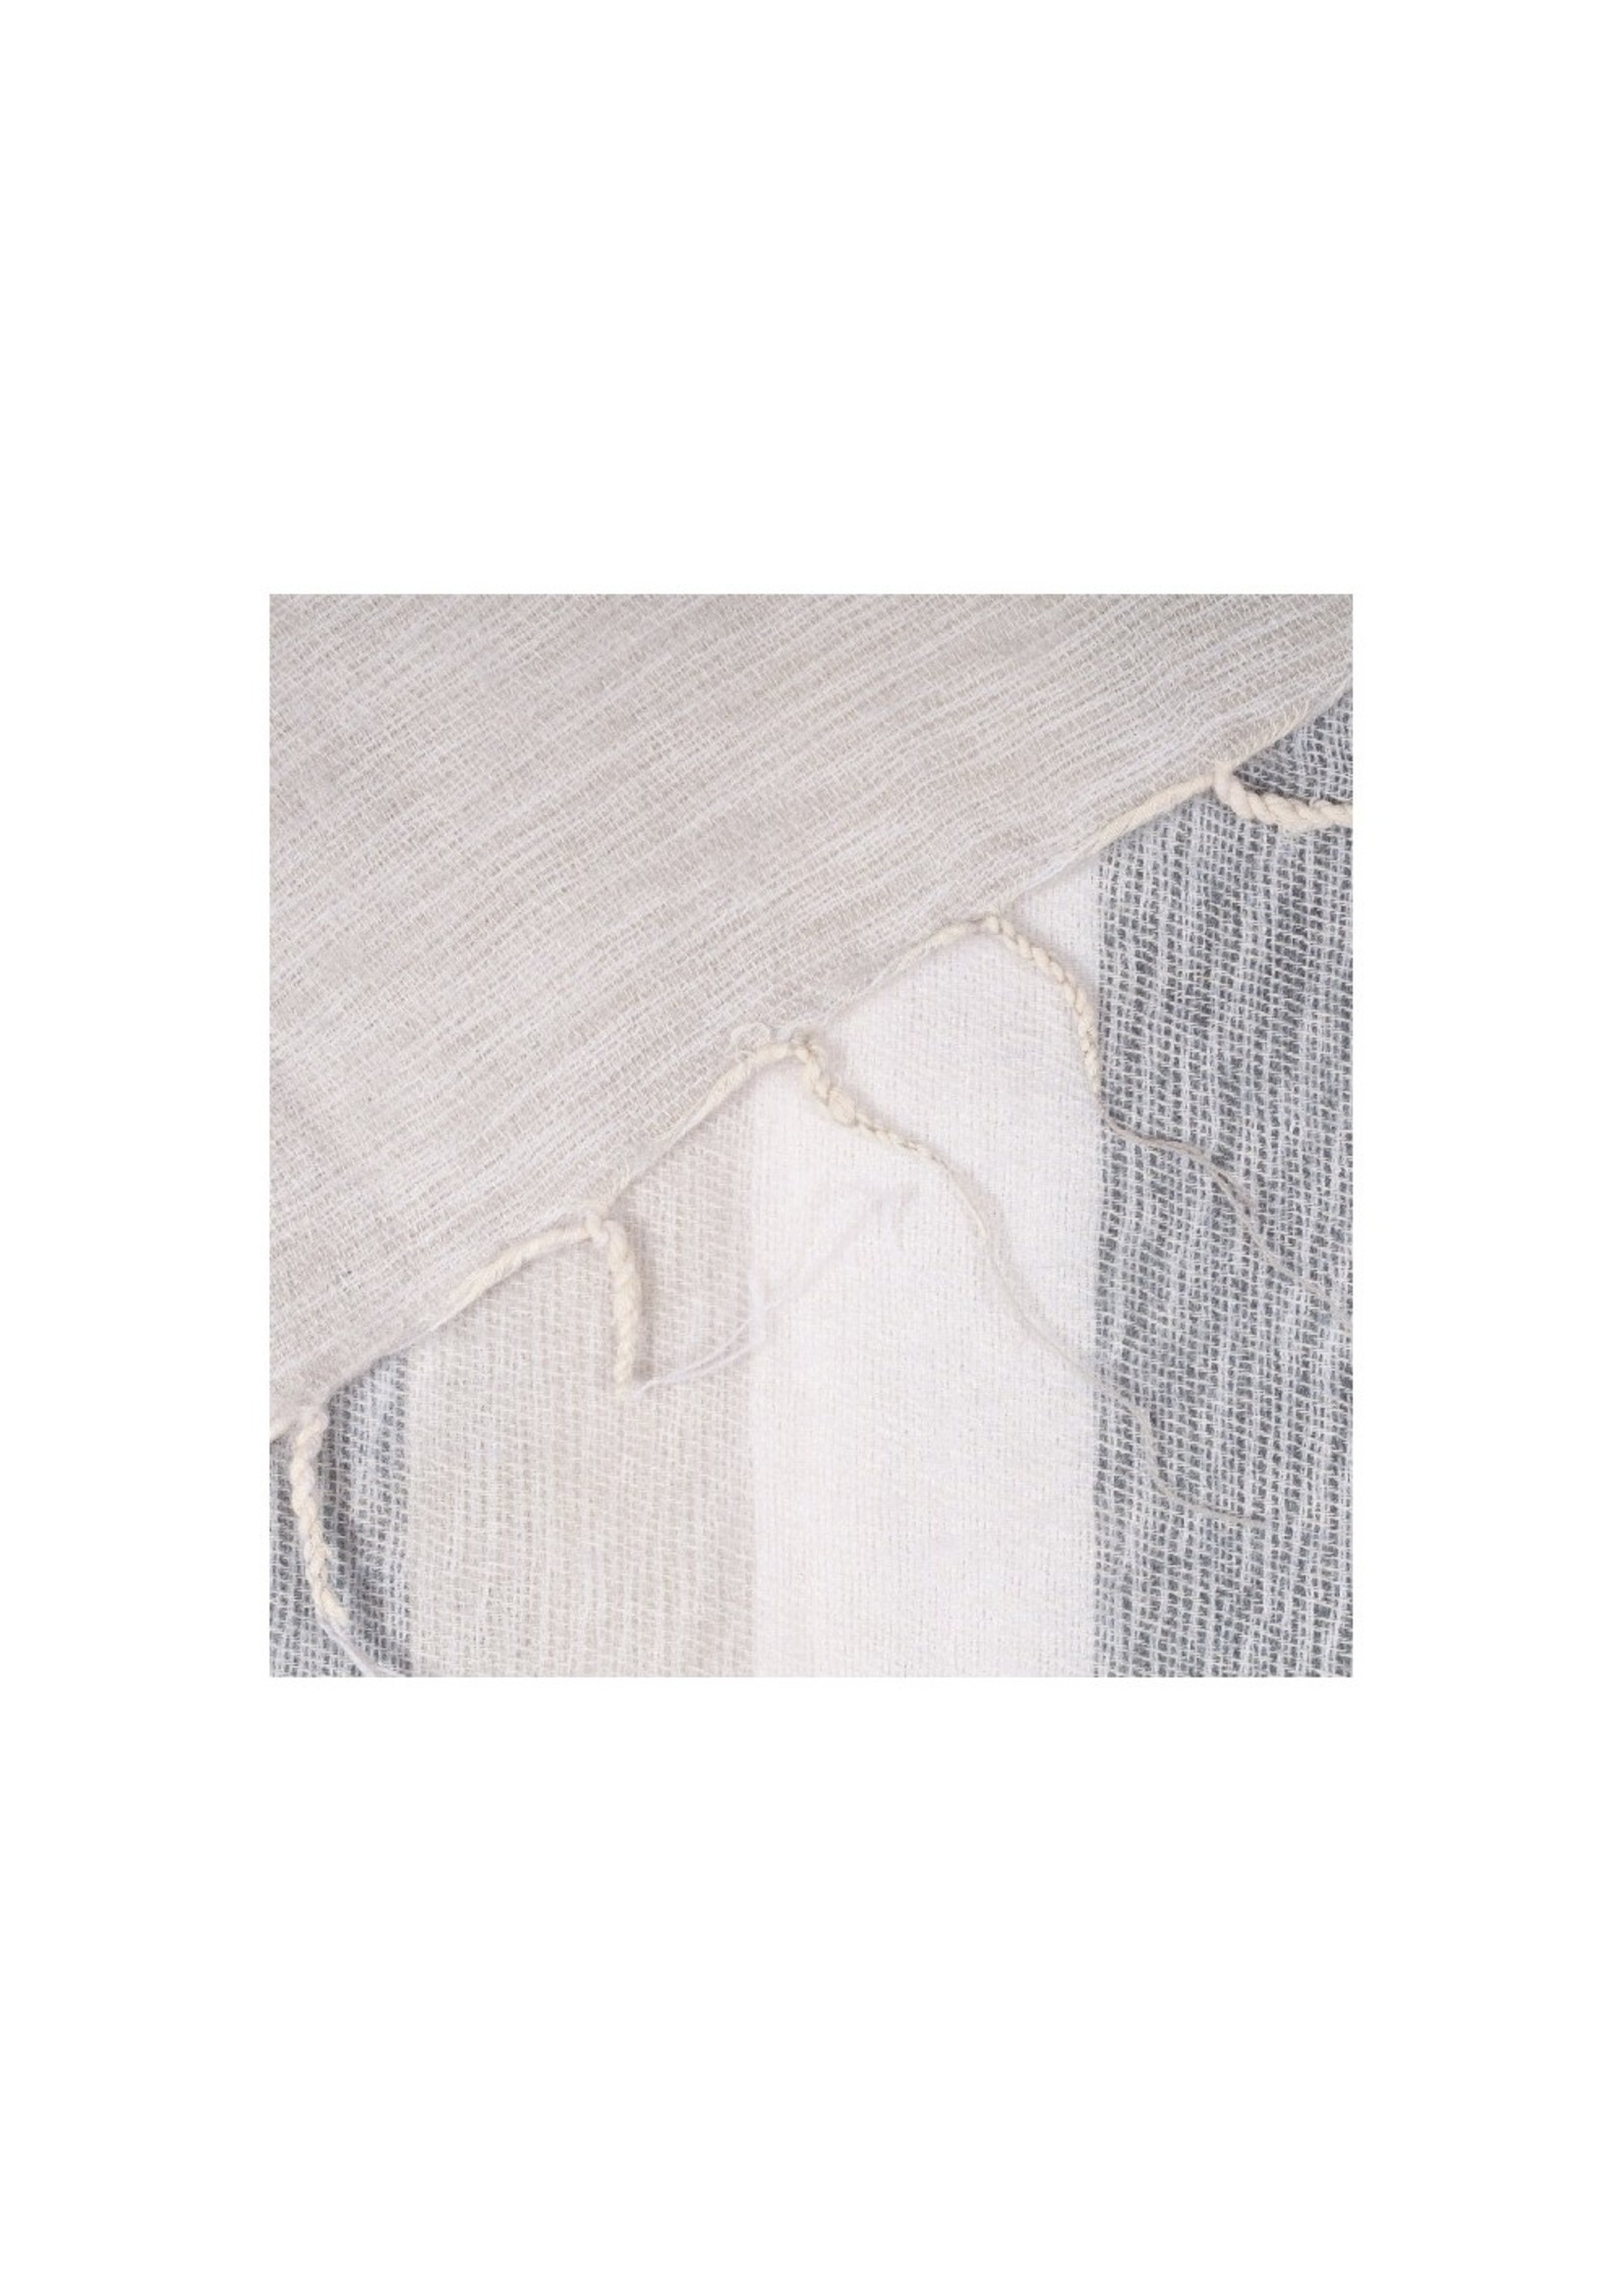 Sjaal met Verhaal Plaid 240x120 cm (wool-look) cream-grey striped